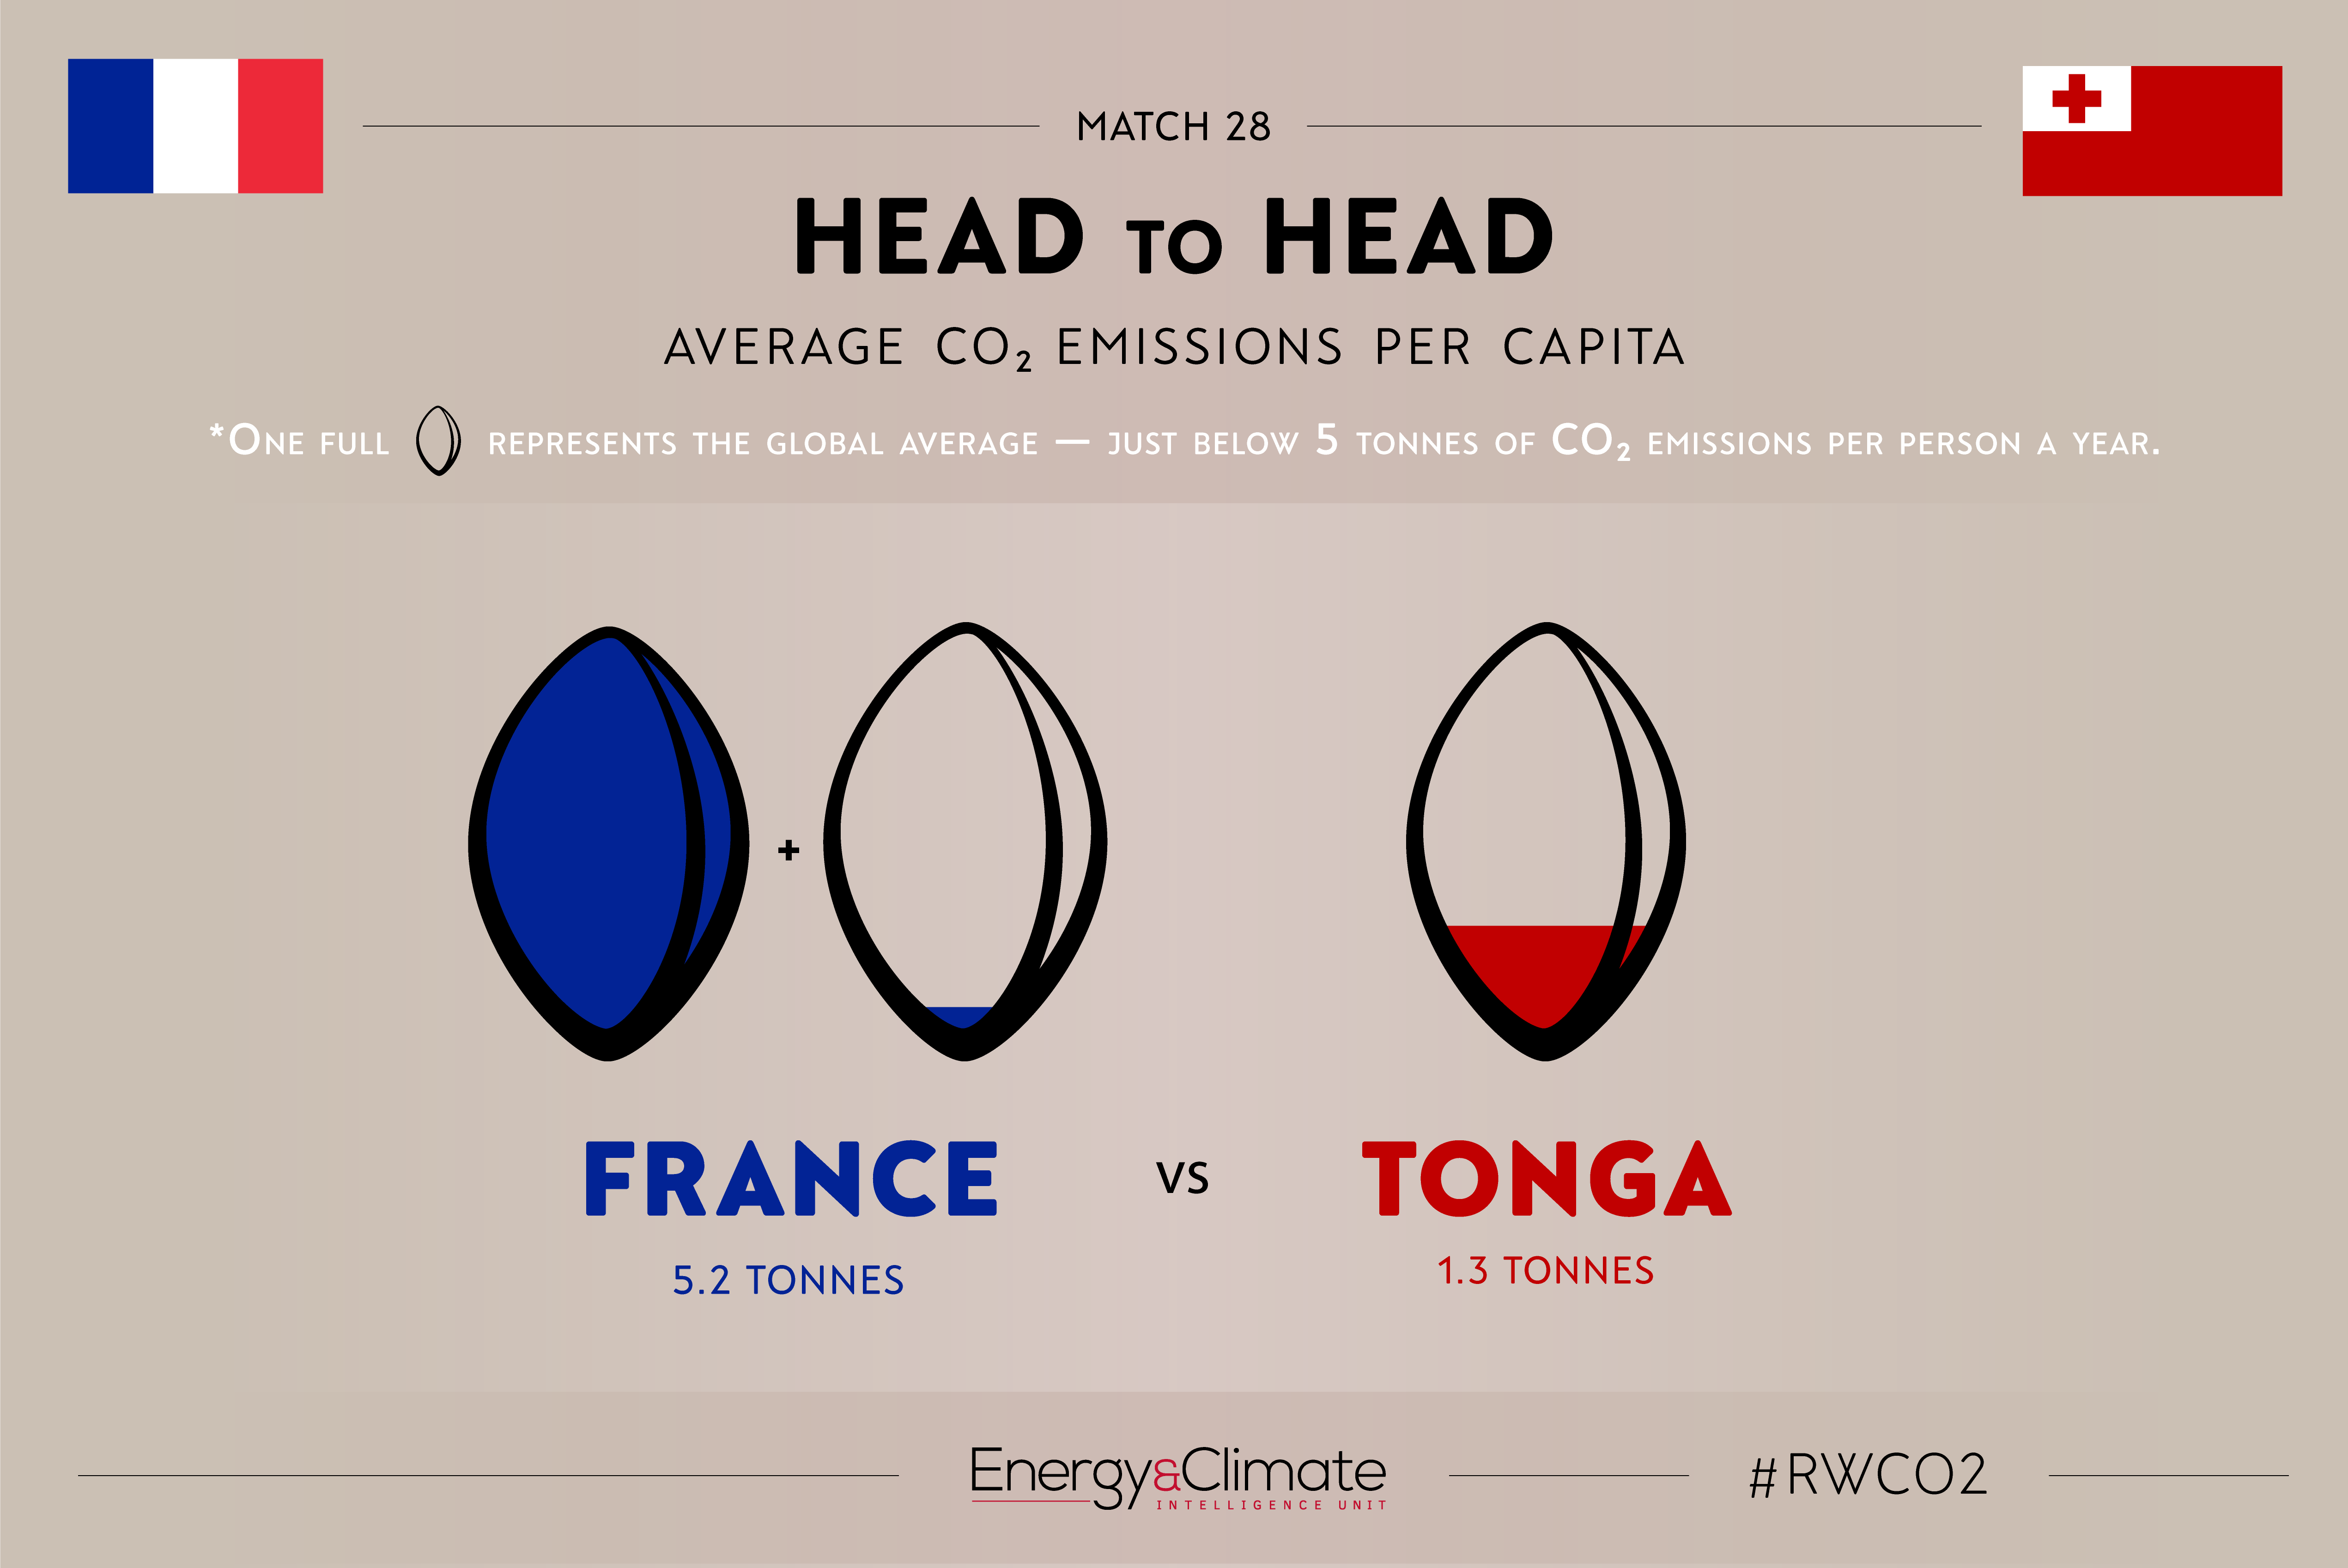 France v Tonga per capita emissions